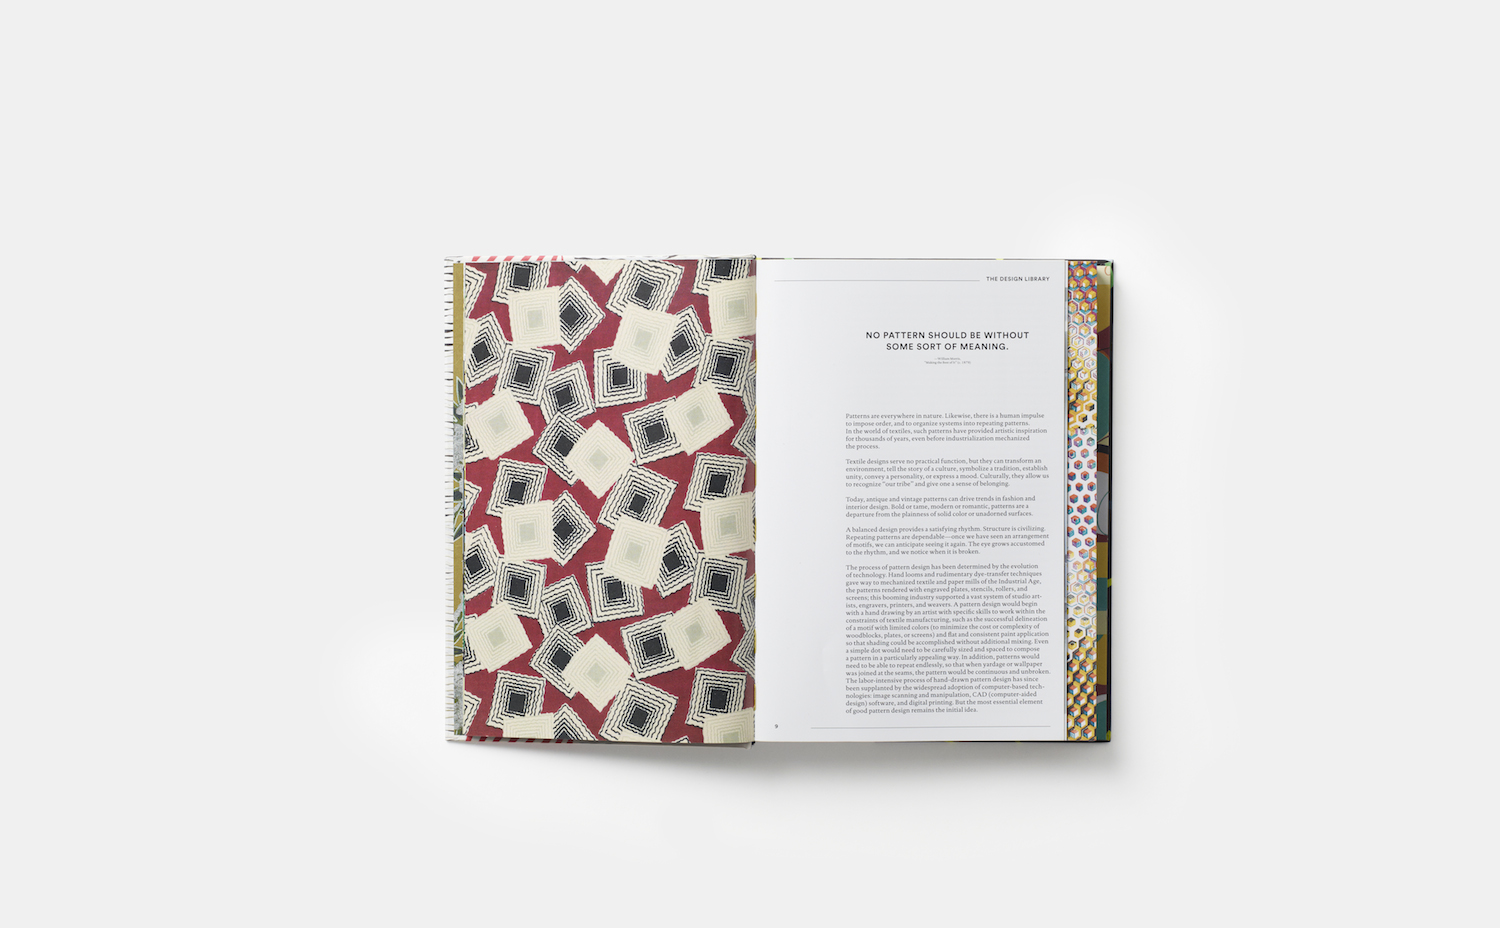 Patterns-A-Design-Library-Sourcebook-EN-7166-3D-pp-008-009 (1). William Morris, fundador del movimiento Arts & Crafts, fue uno de los grandes diseñadores textiles del siglo XIX. El libro recoge obras de grandes de la industria